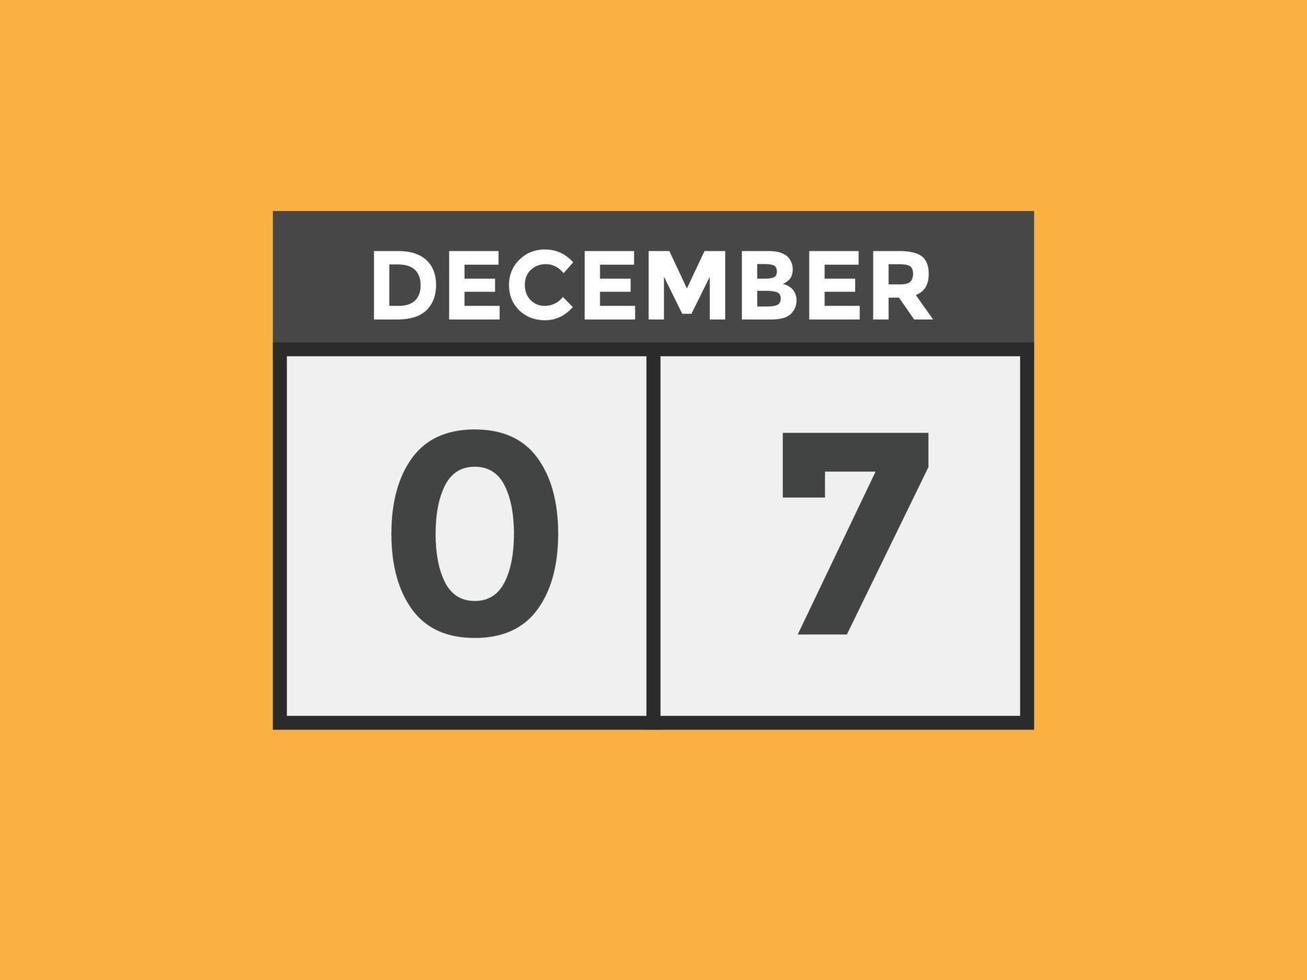 dicembre 7 calendario promemoria. 7 ° dicembre quotidiano calendario icona modello. calendario 7 ° dicembre icona design modello. vettore illustrazione